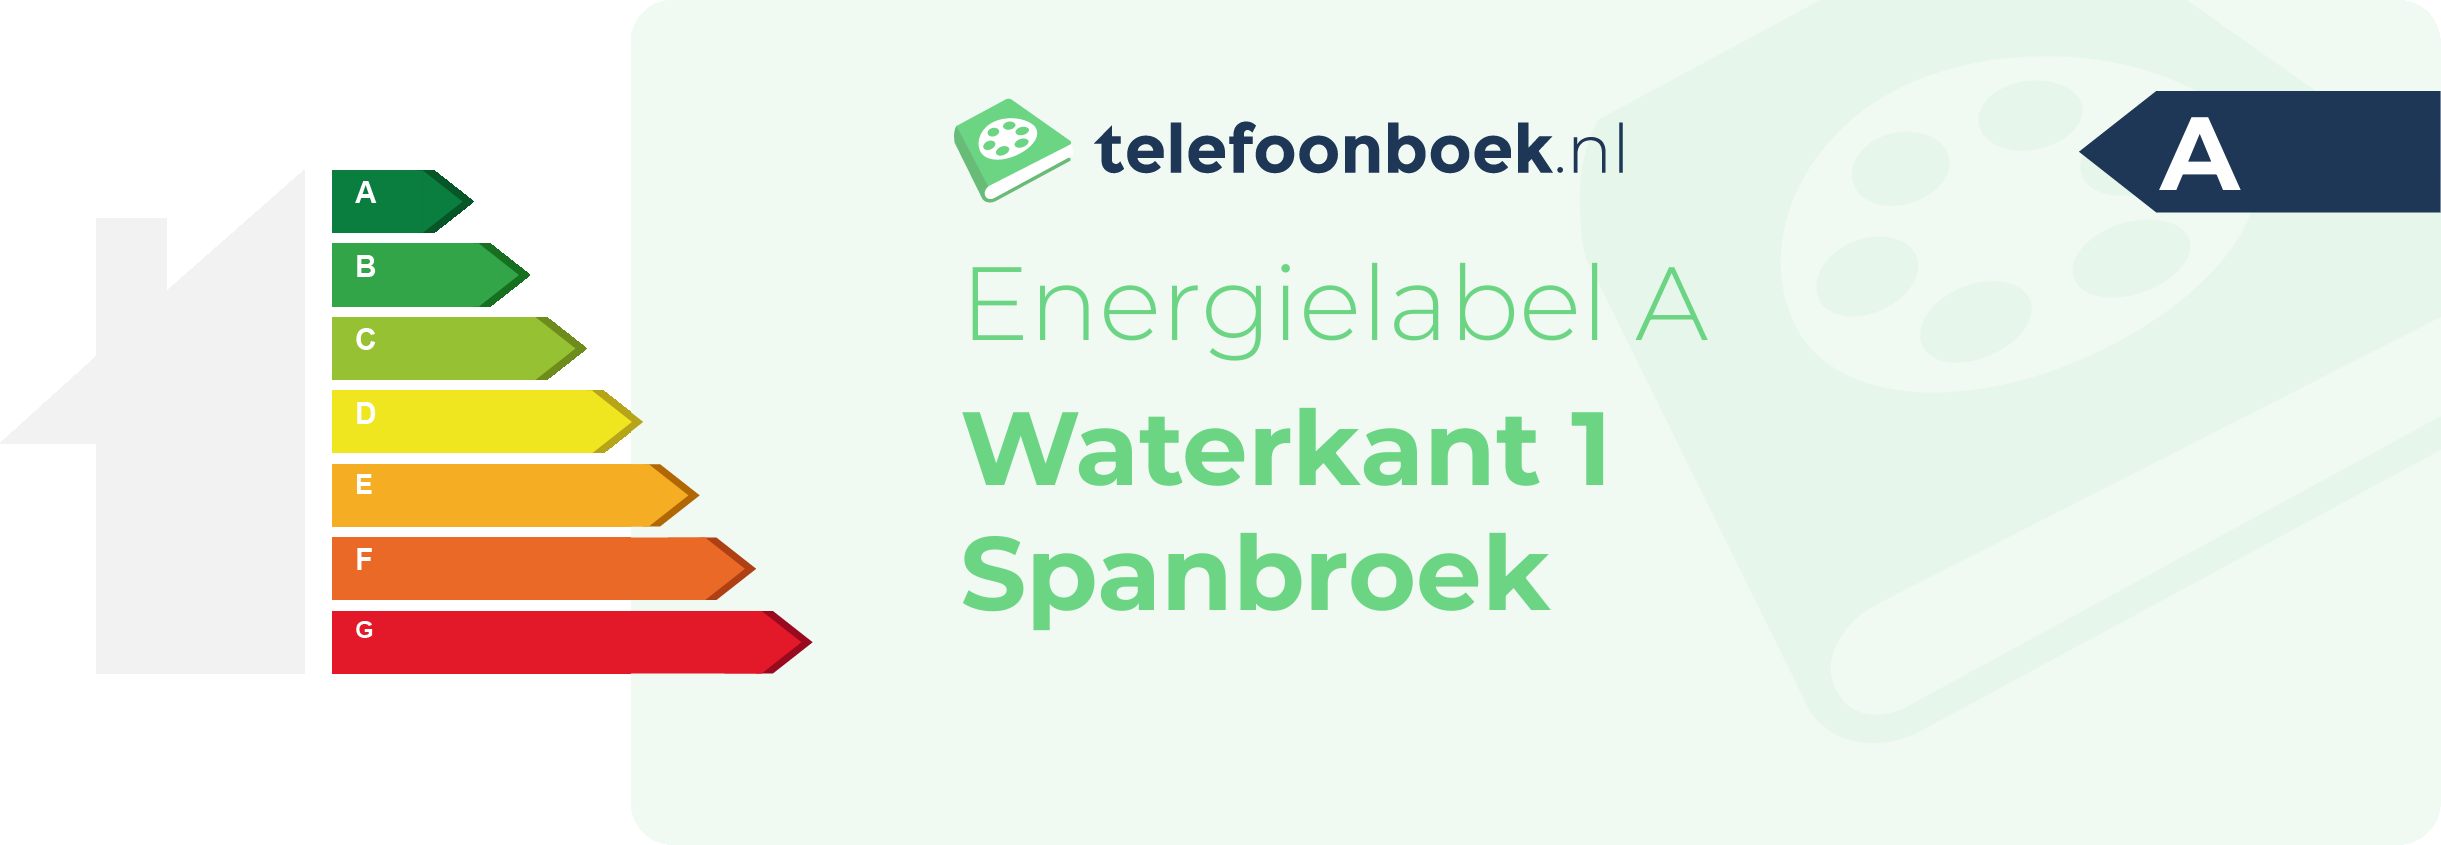 Energielabel Waterkant 1 Spanbroek